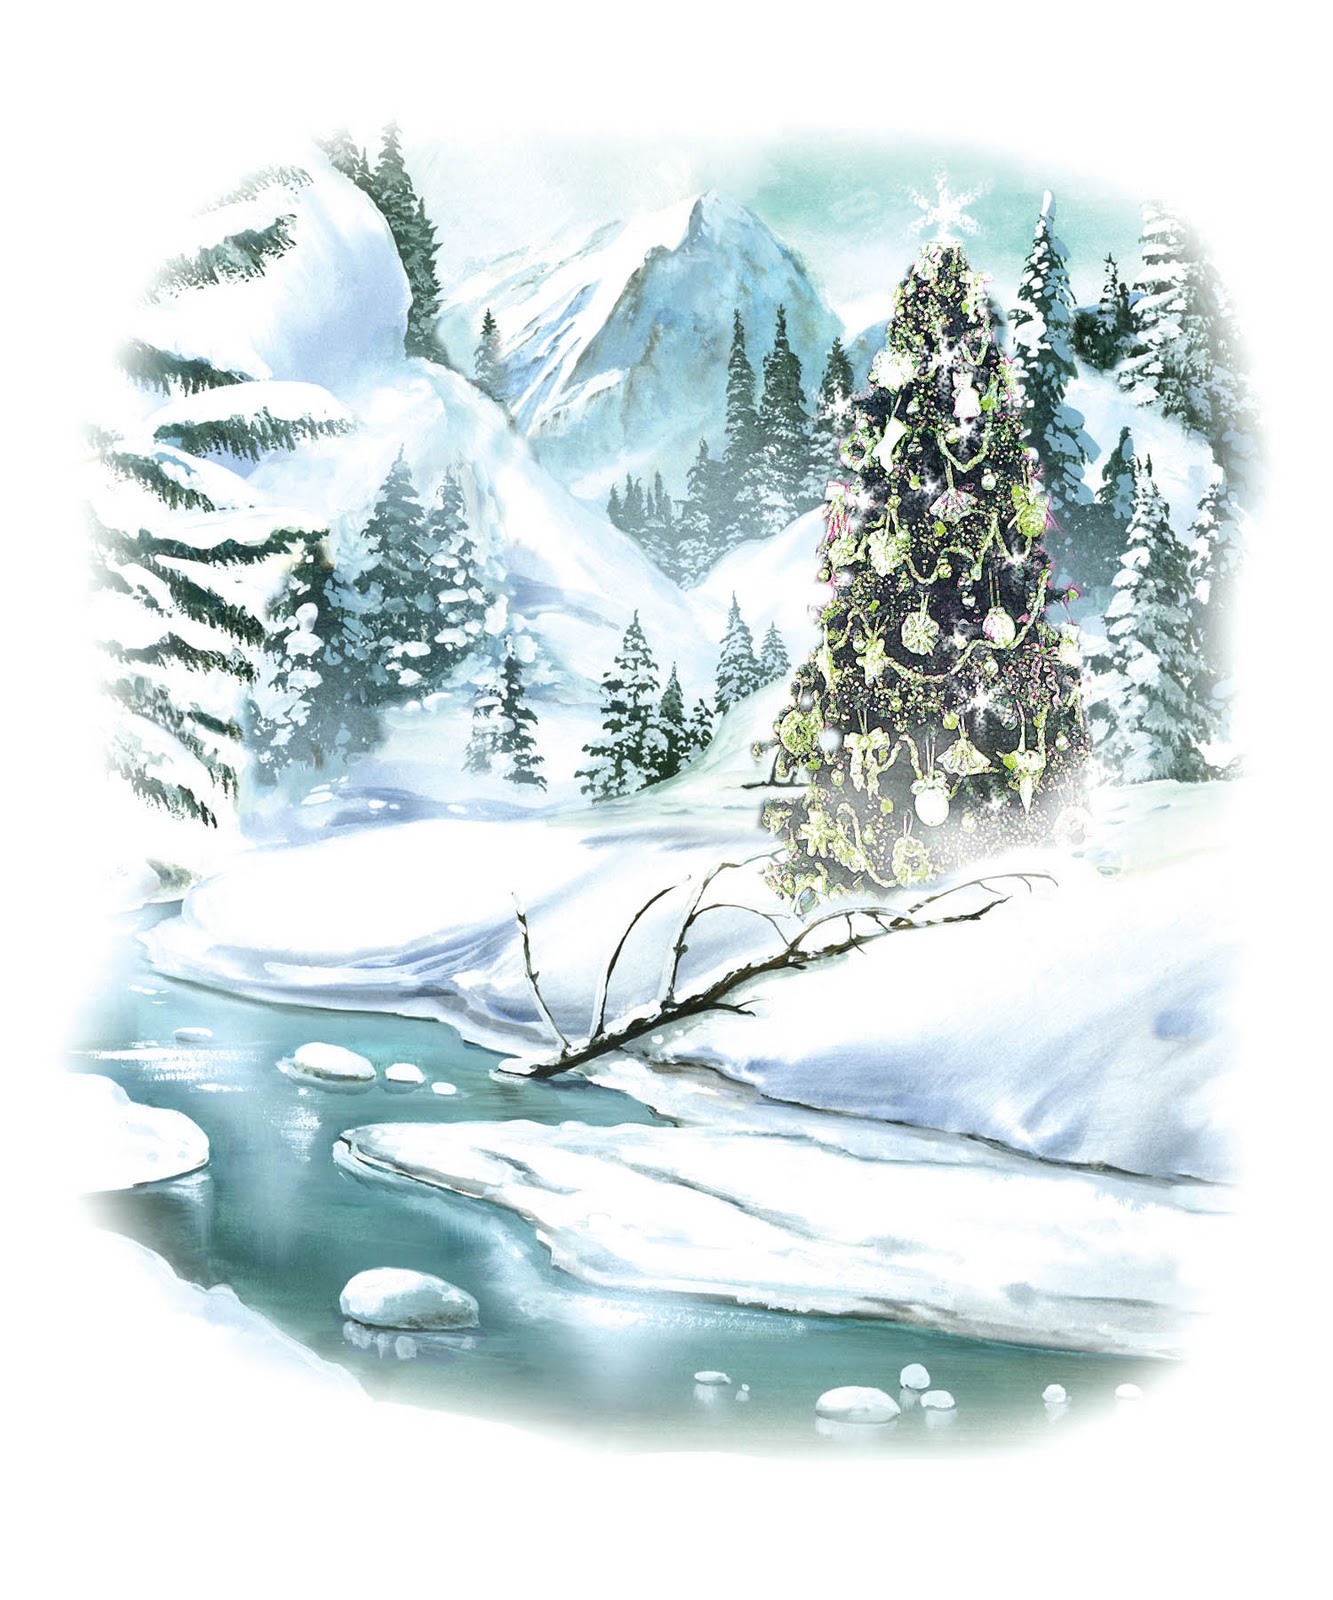 free-winter-scene-cliparts-download-free-winter-scene-cliparts-png-images-free-cliparts-on